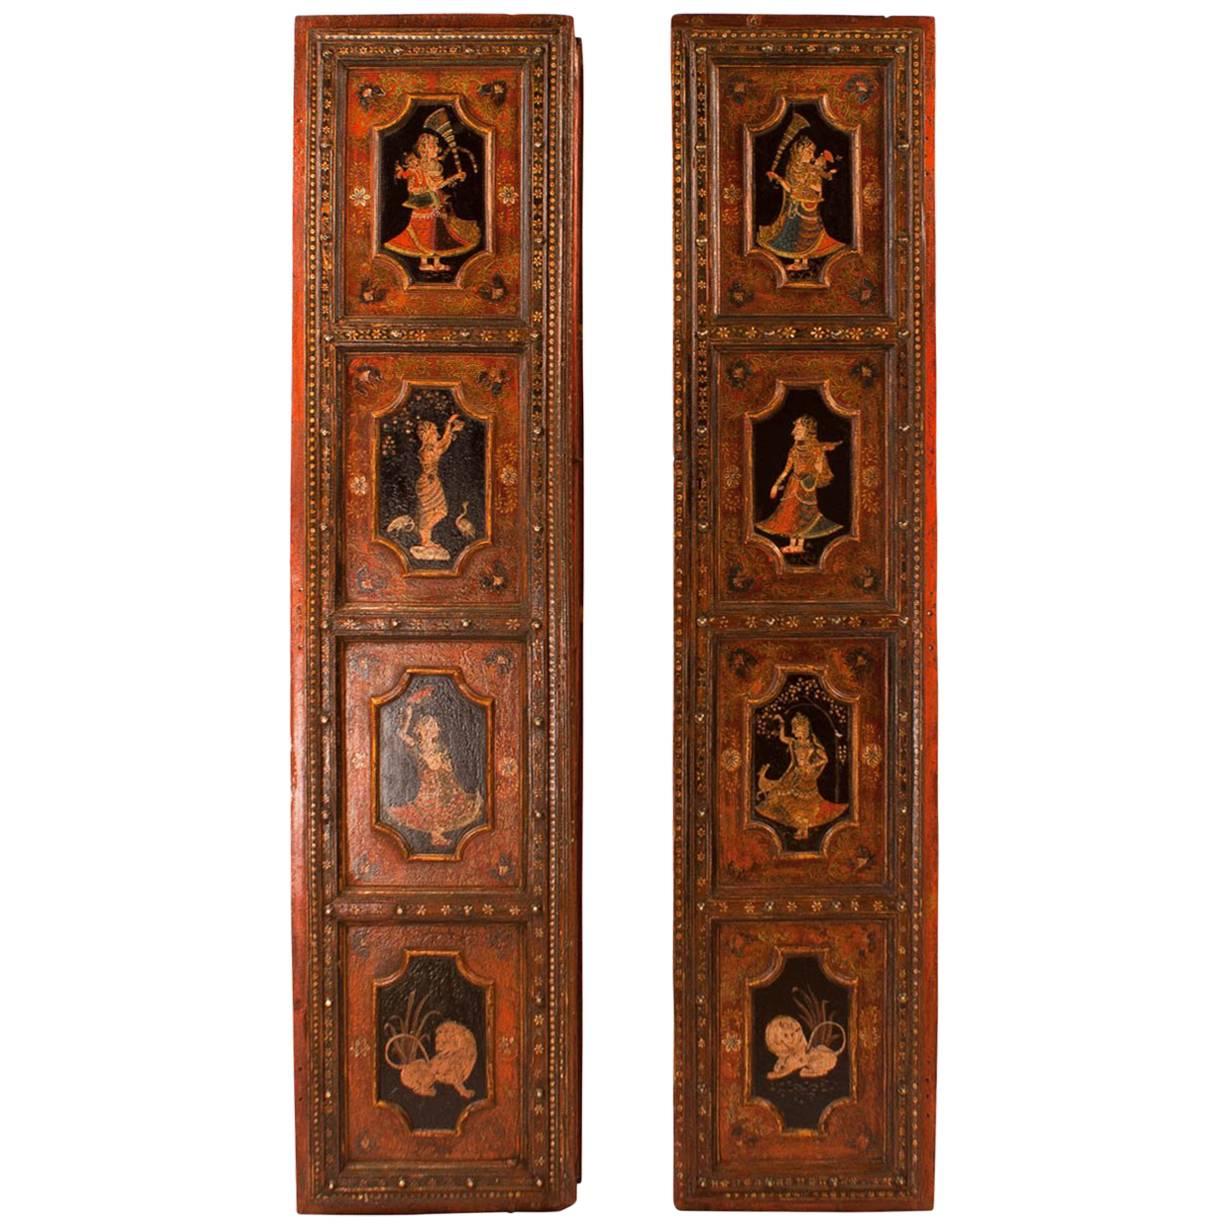 Pair of Painted Indian Palace Doors, circa 1830